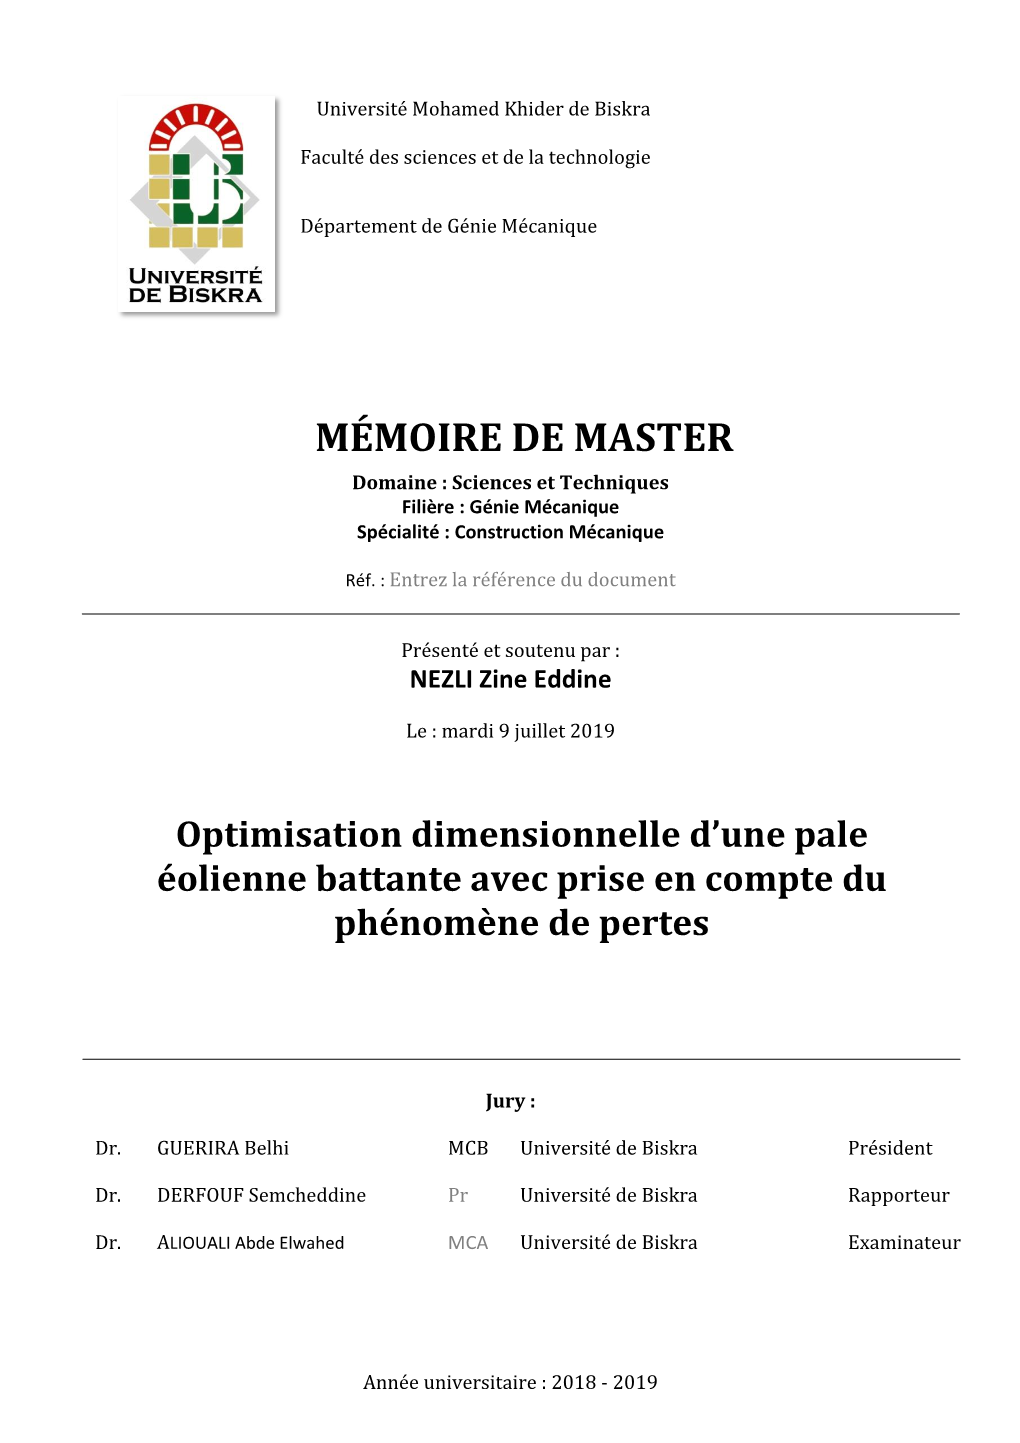 MÉMOIRE DE MASTER Domaine : Sciences Et Techniques Filière : Génie Mécanique Spécialité : Construction Mécanique